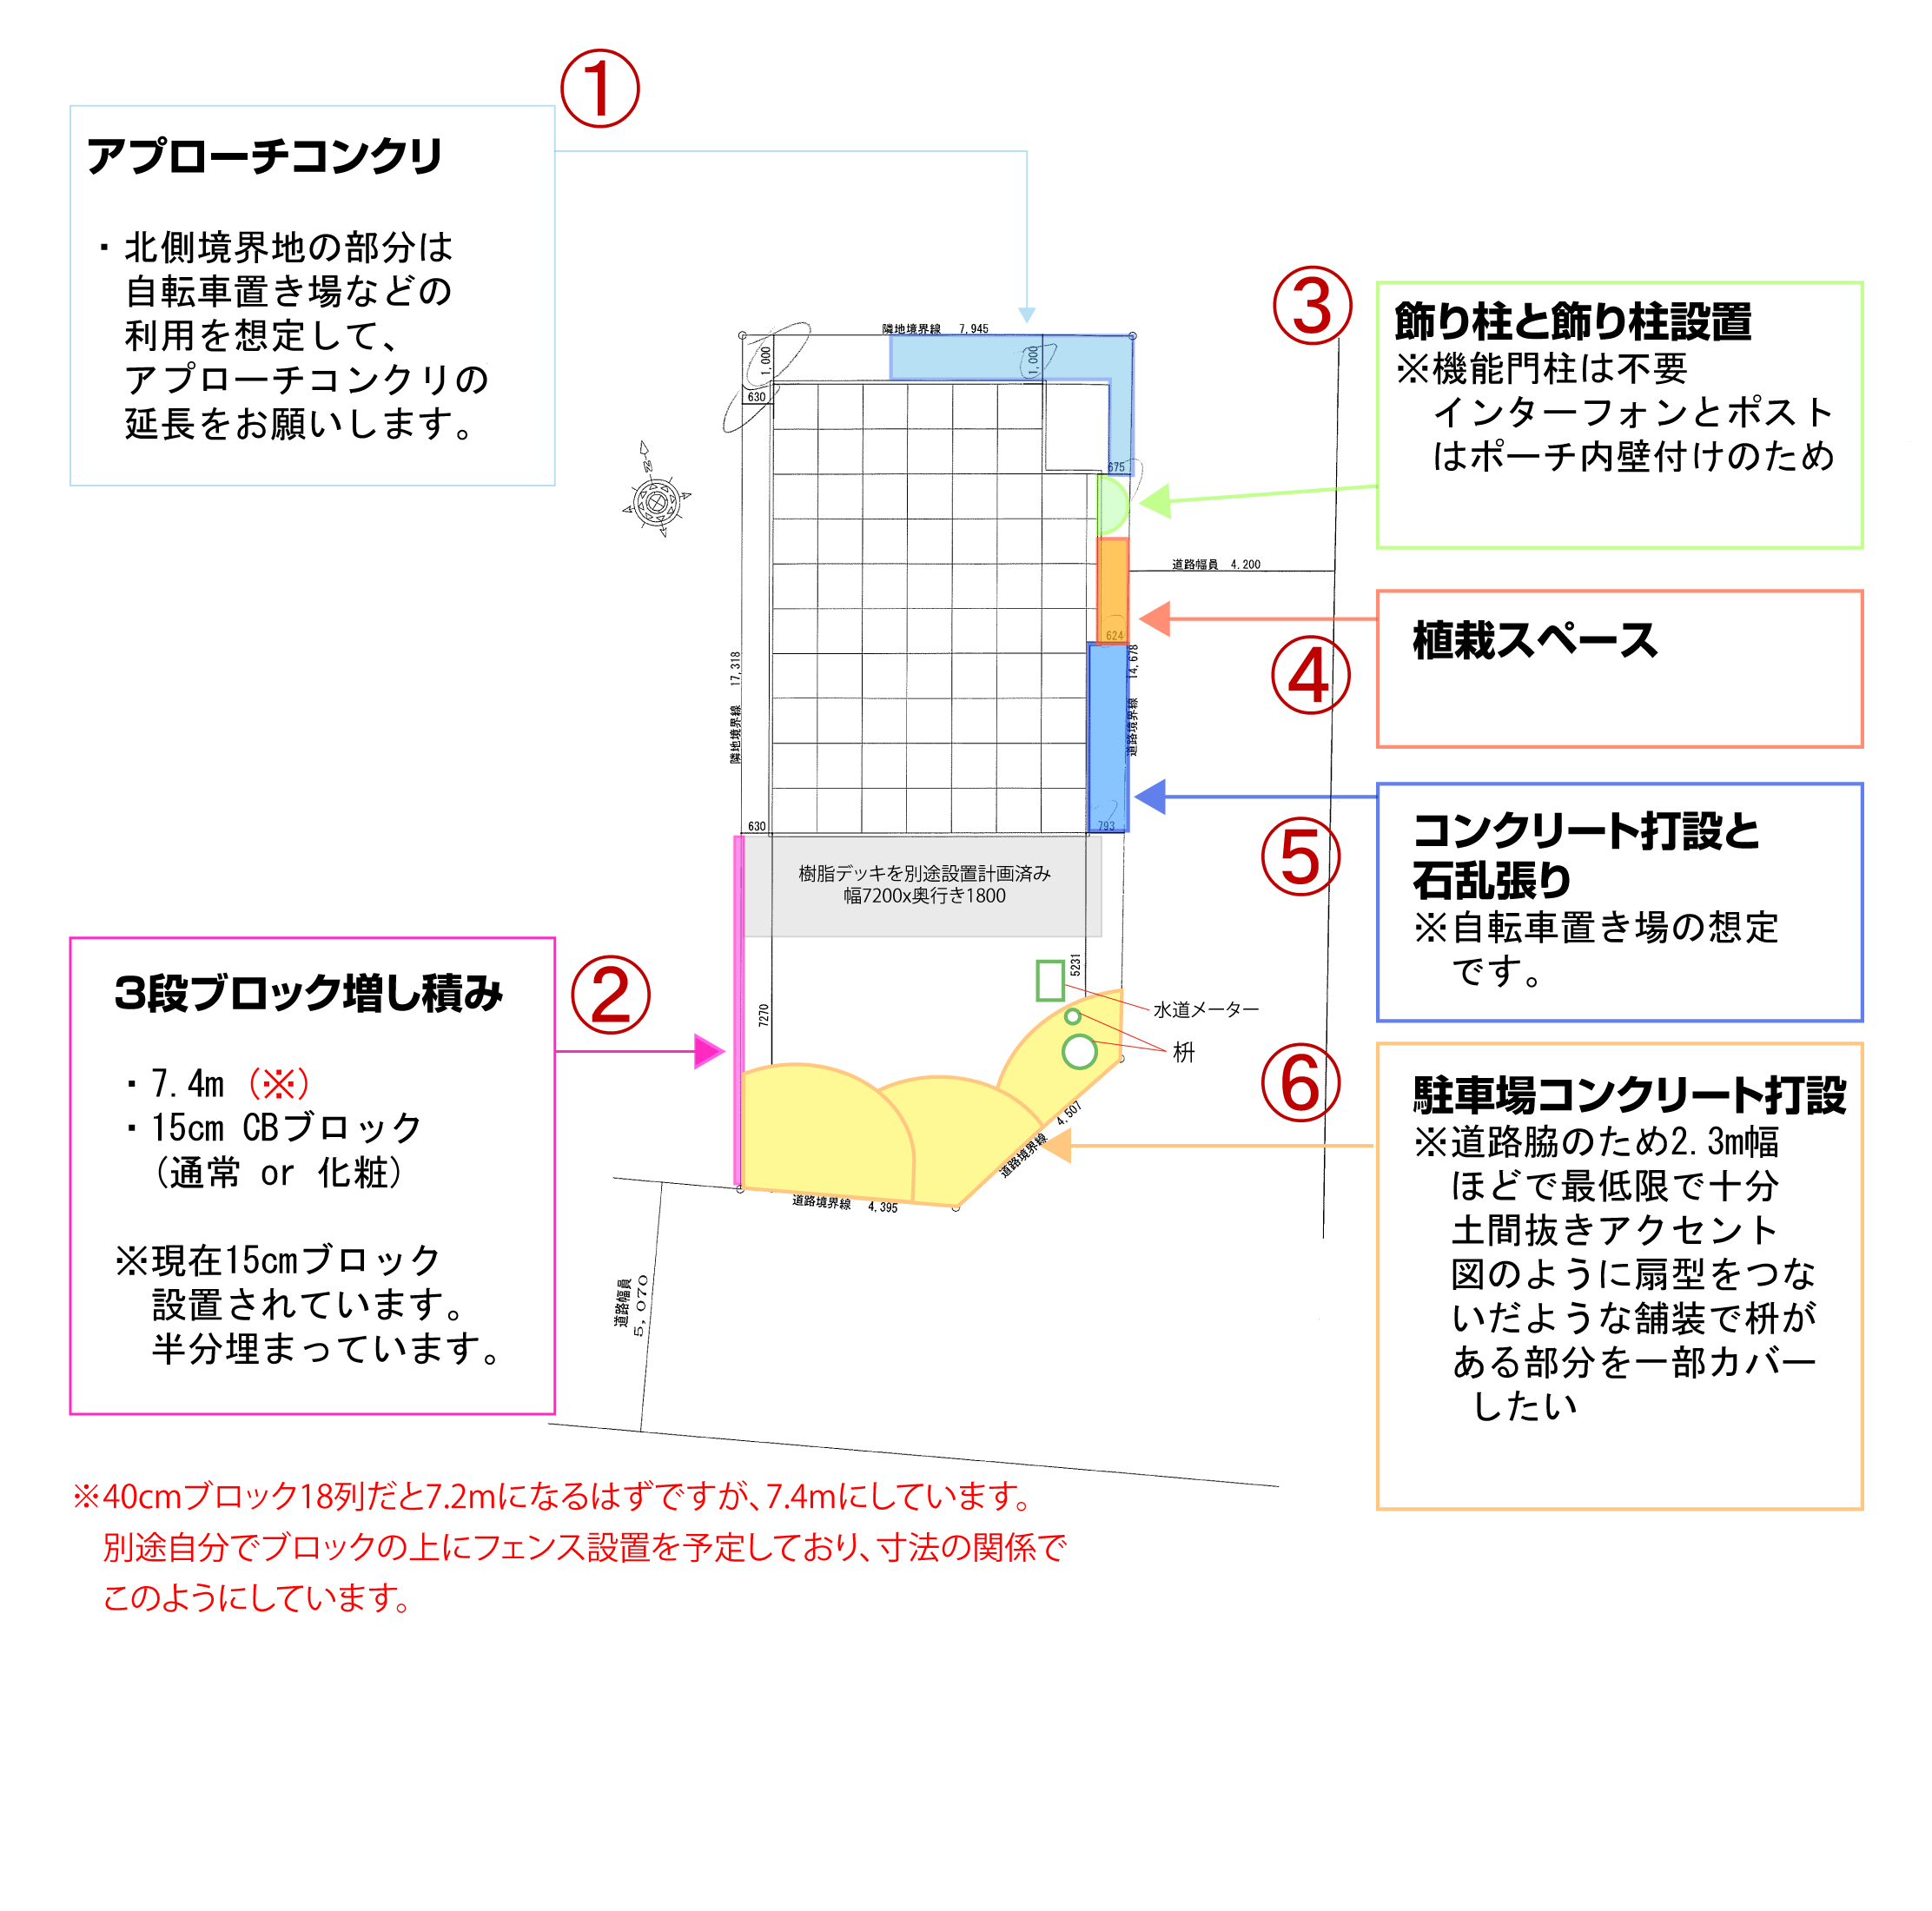 構想図_追加_20120610-1